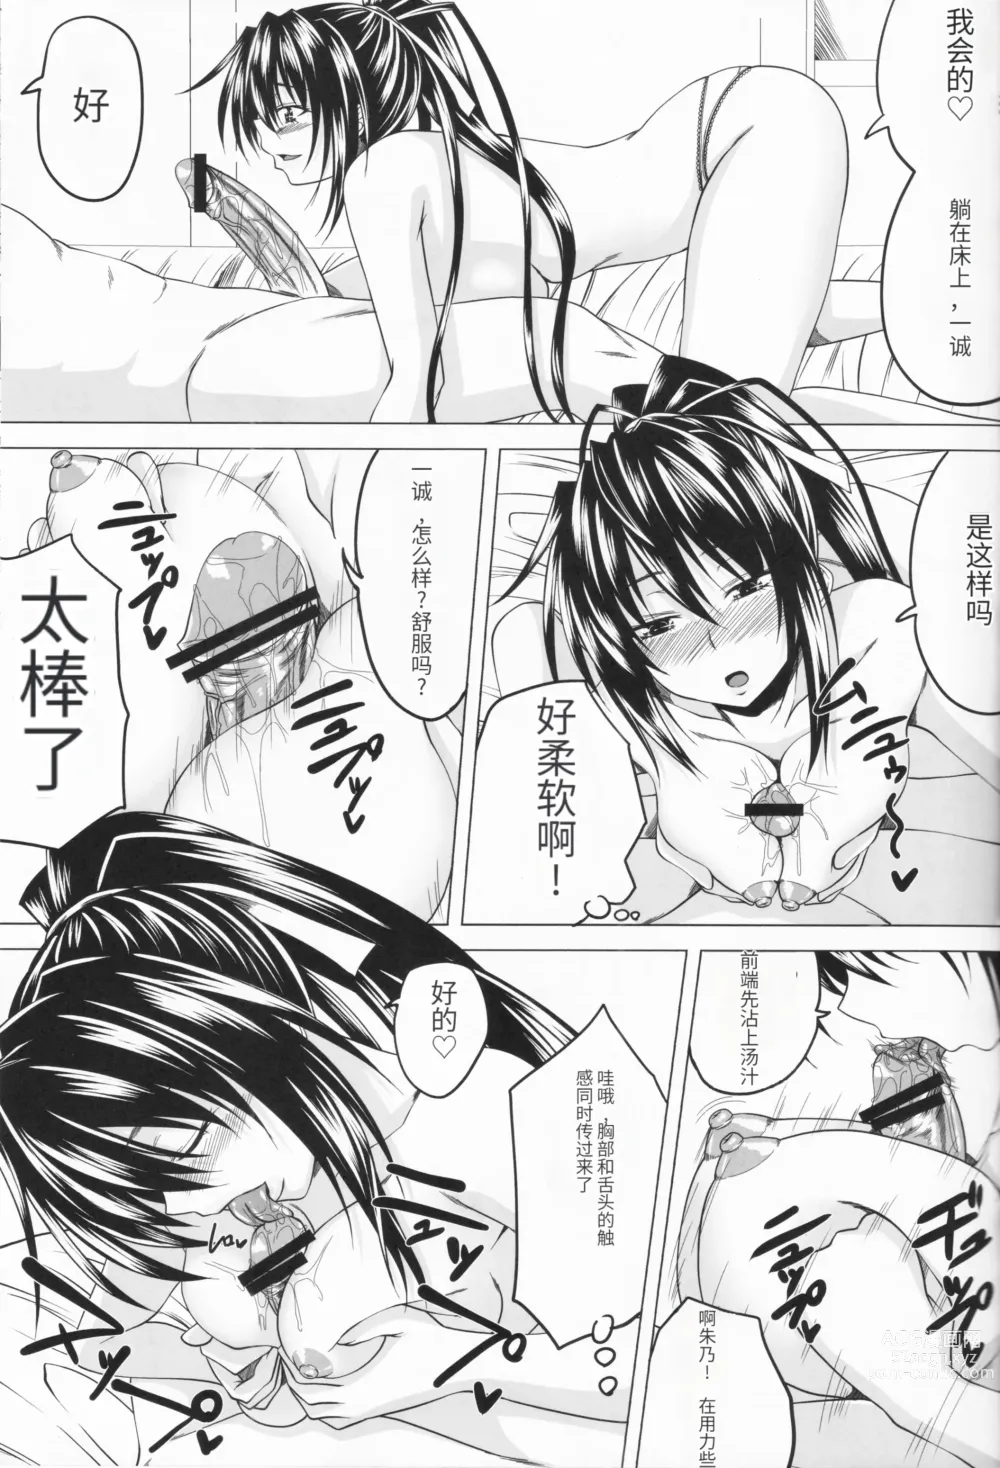 Page 14 of doujinshi Risou no Hyoui Seikatsu